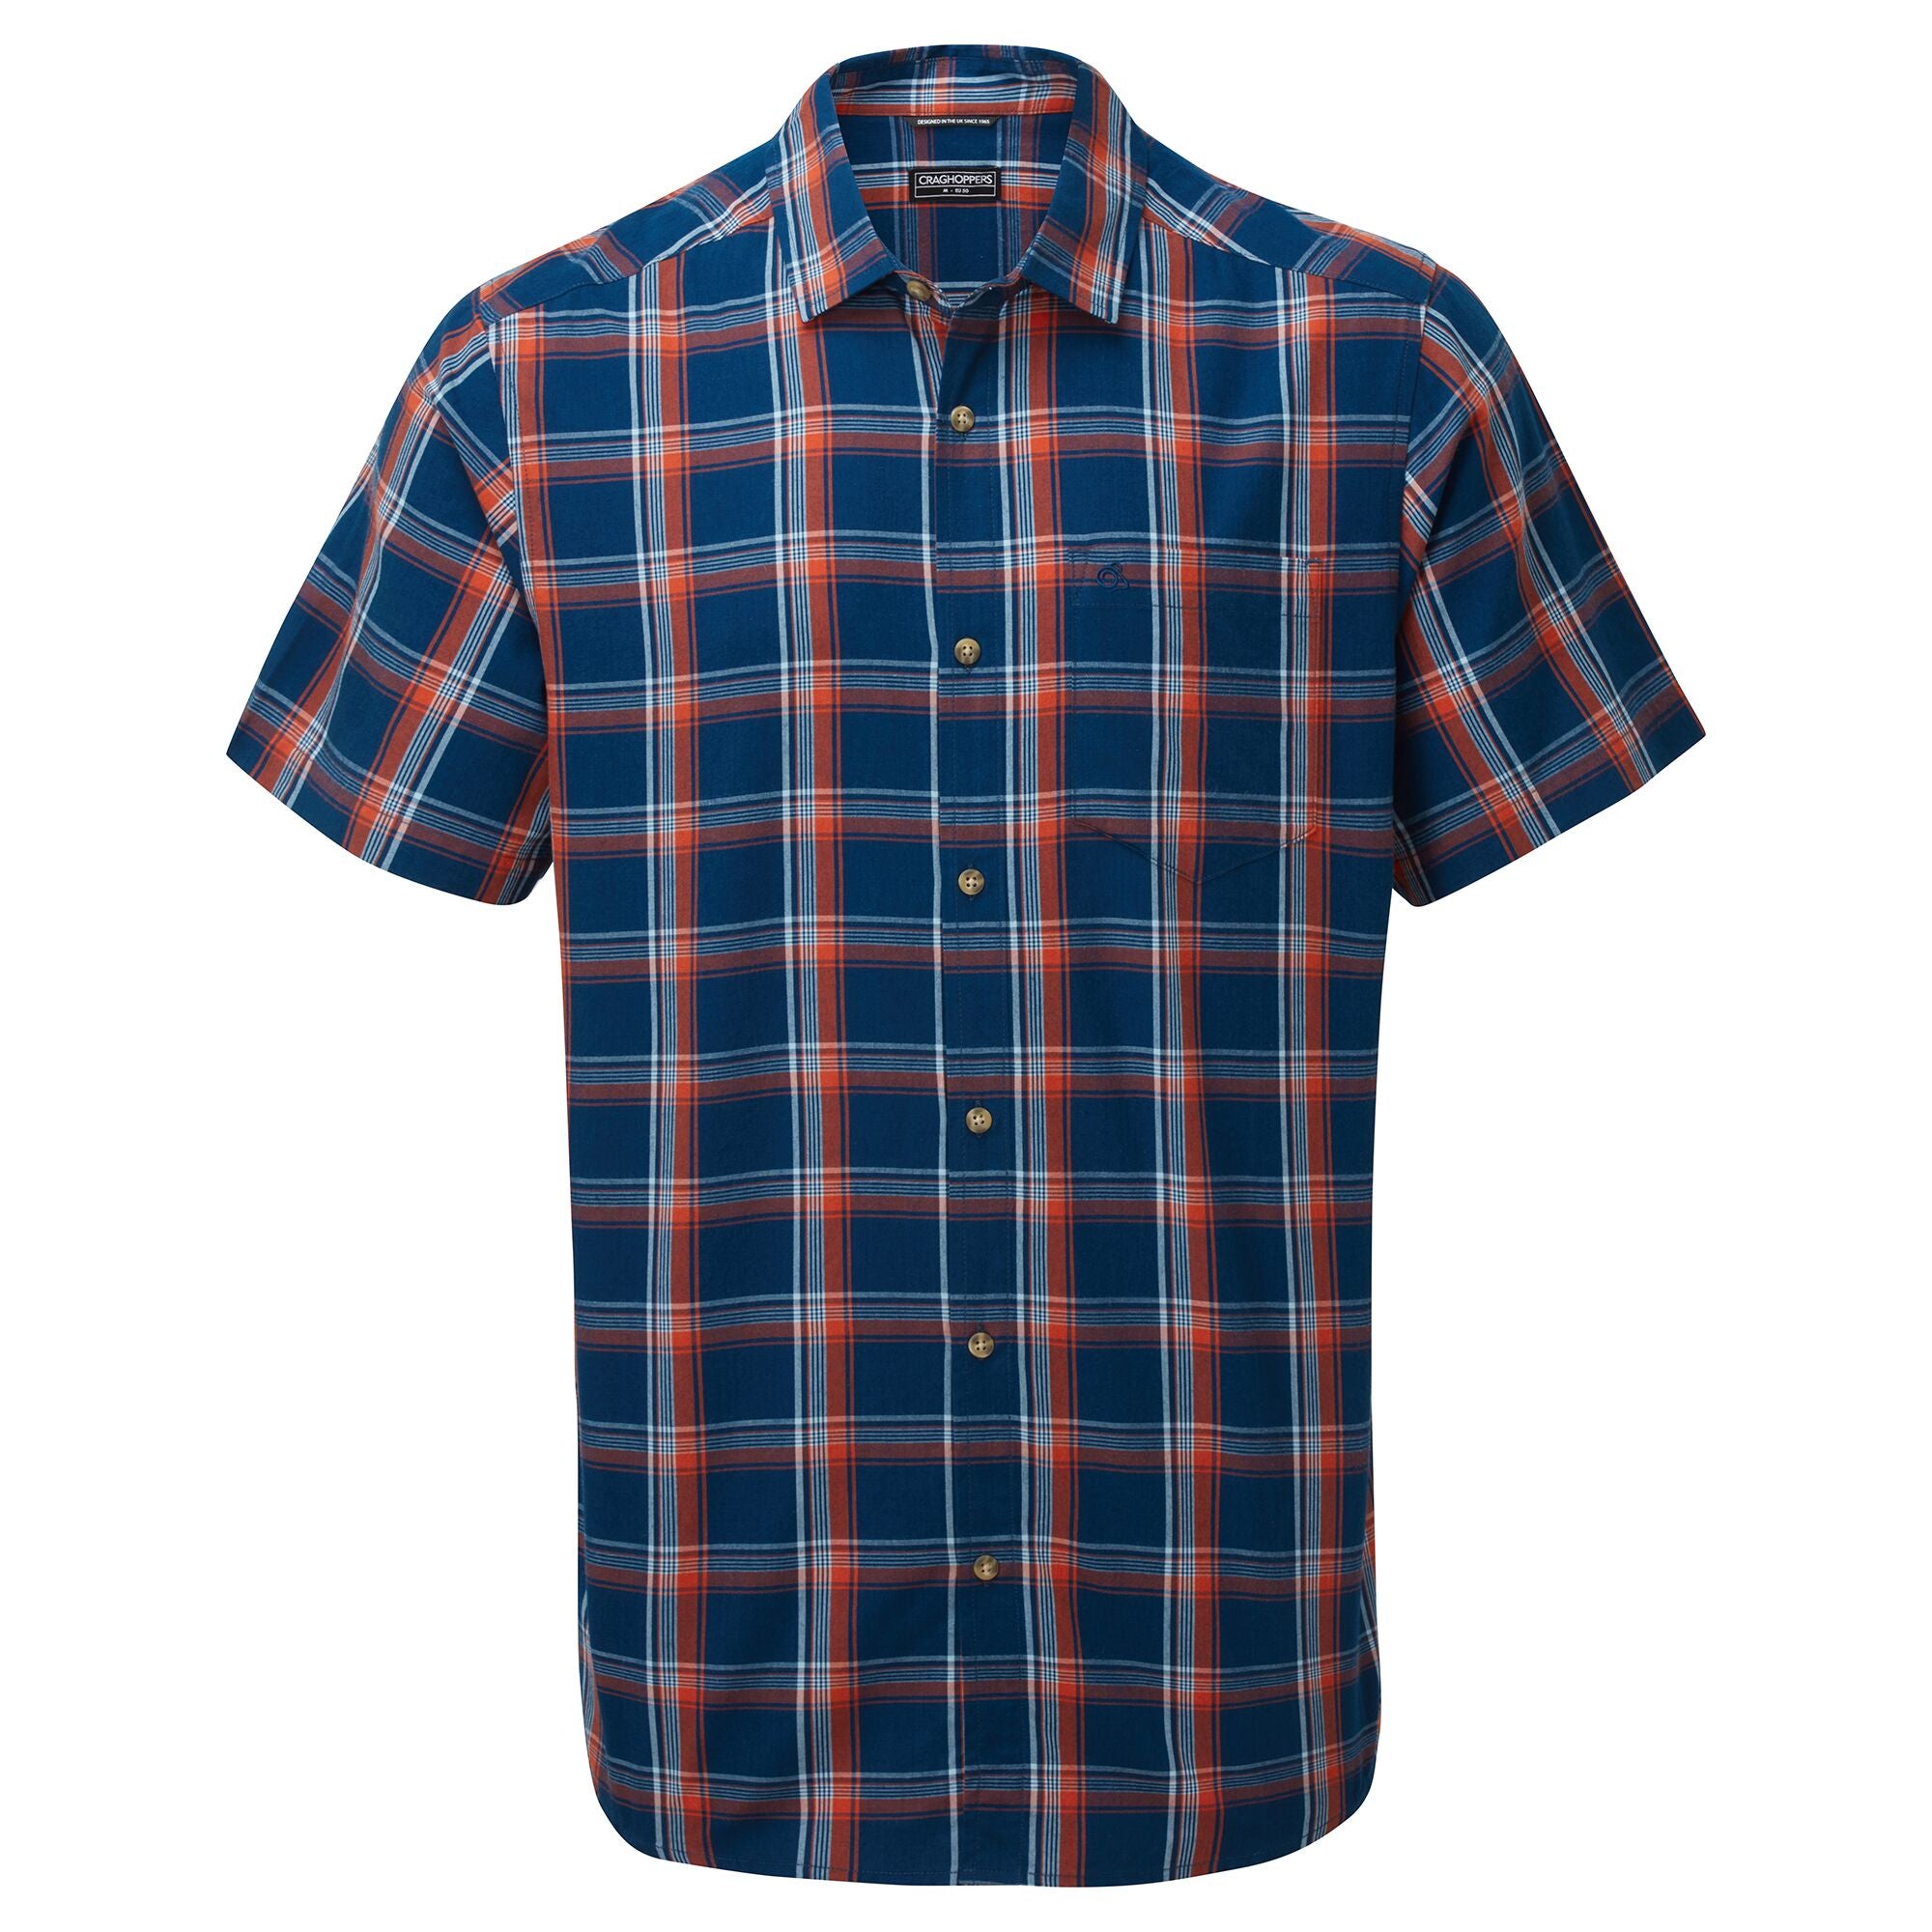 Men's Rafie Check Short Sleeved Shirt | Poseidon Blue Check